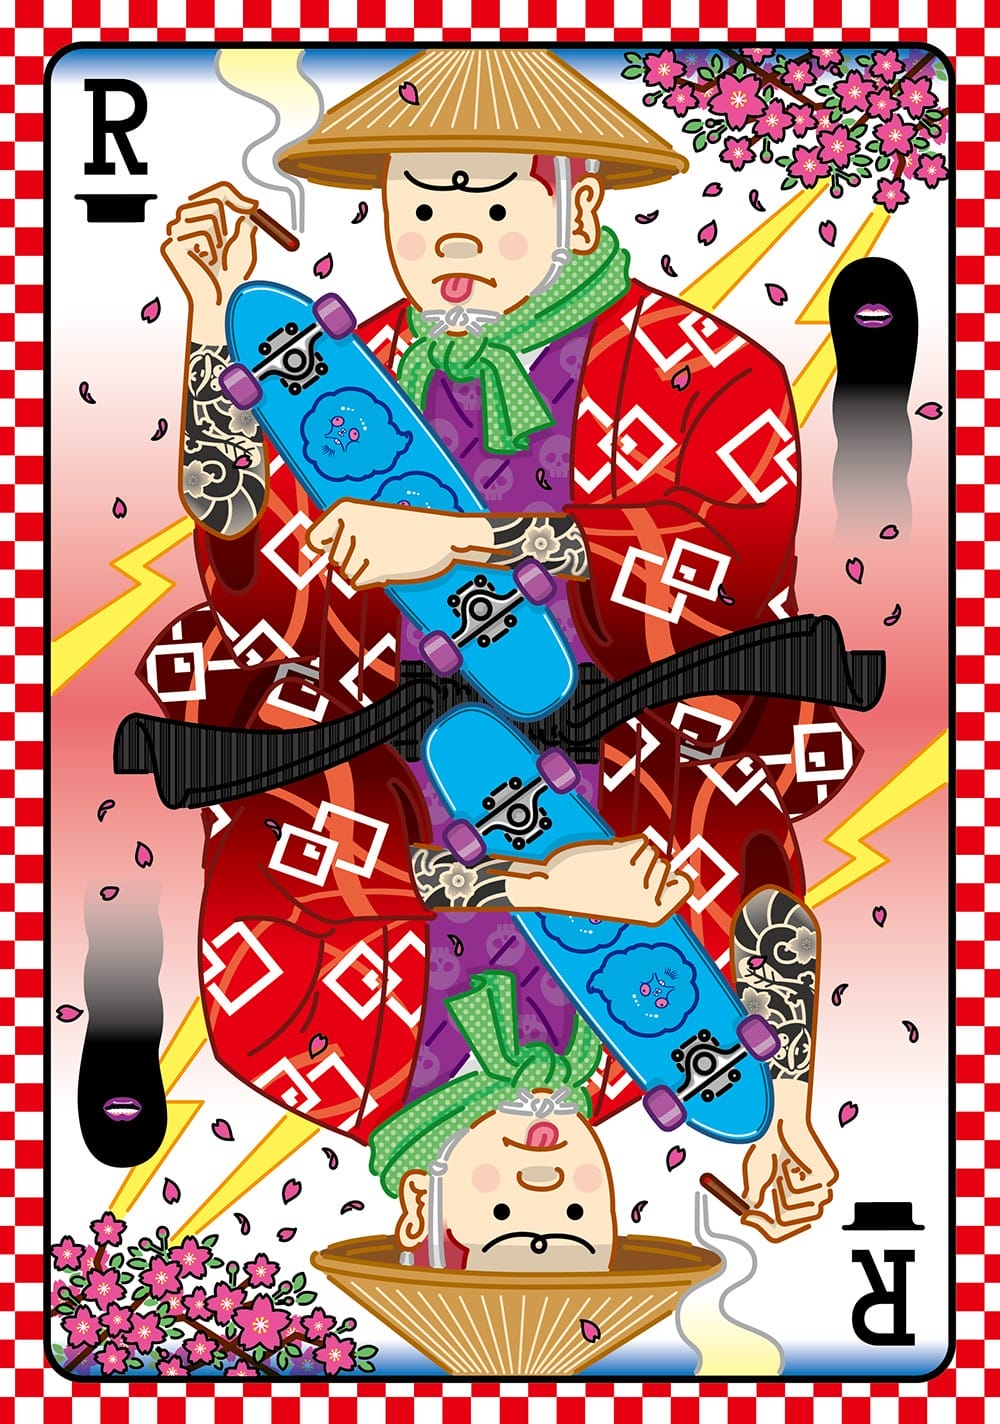 carte de jeu digitale par l'artiste japonais Yu Suda 